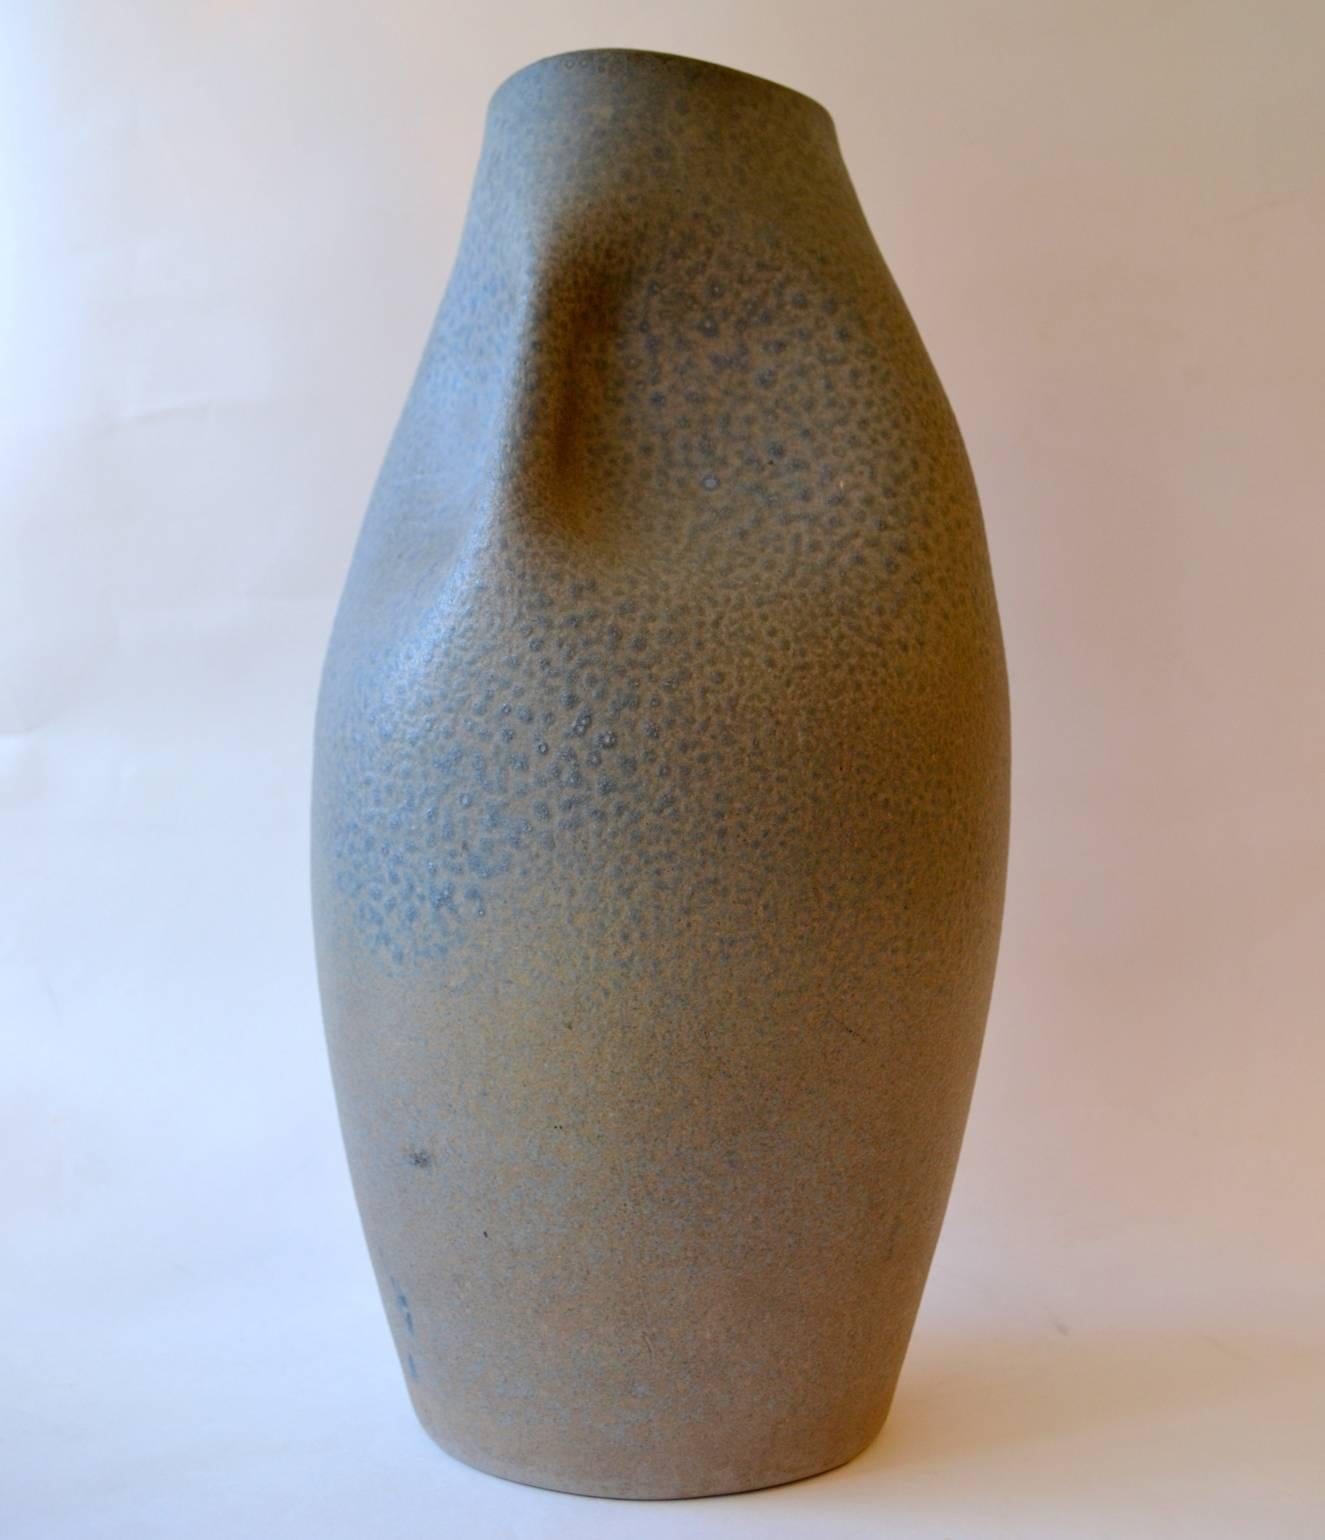 Große skulpturale, handgedrehte und handbearbeitete Vase mit feiner blauer Strukturglasur, von Bernh Jak Gieriz, Adendorf, Bonn, 1960er Jahre Deutschland. Die Vase eignet sich hervorragend als Bodenvase oder in einer vergessenen Ecke des Hauses und